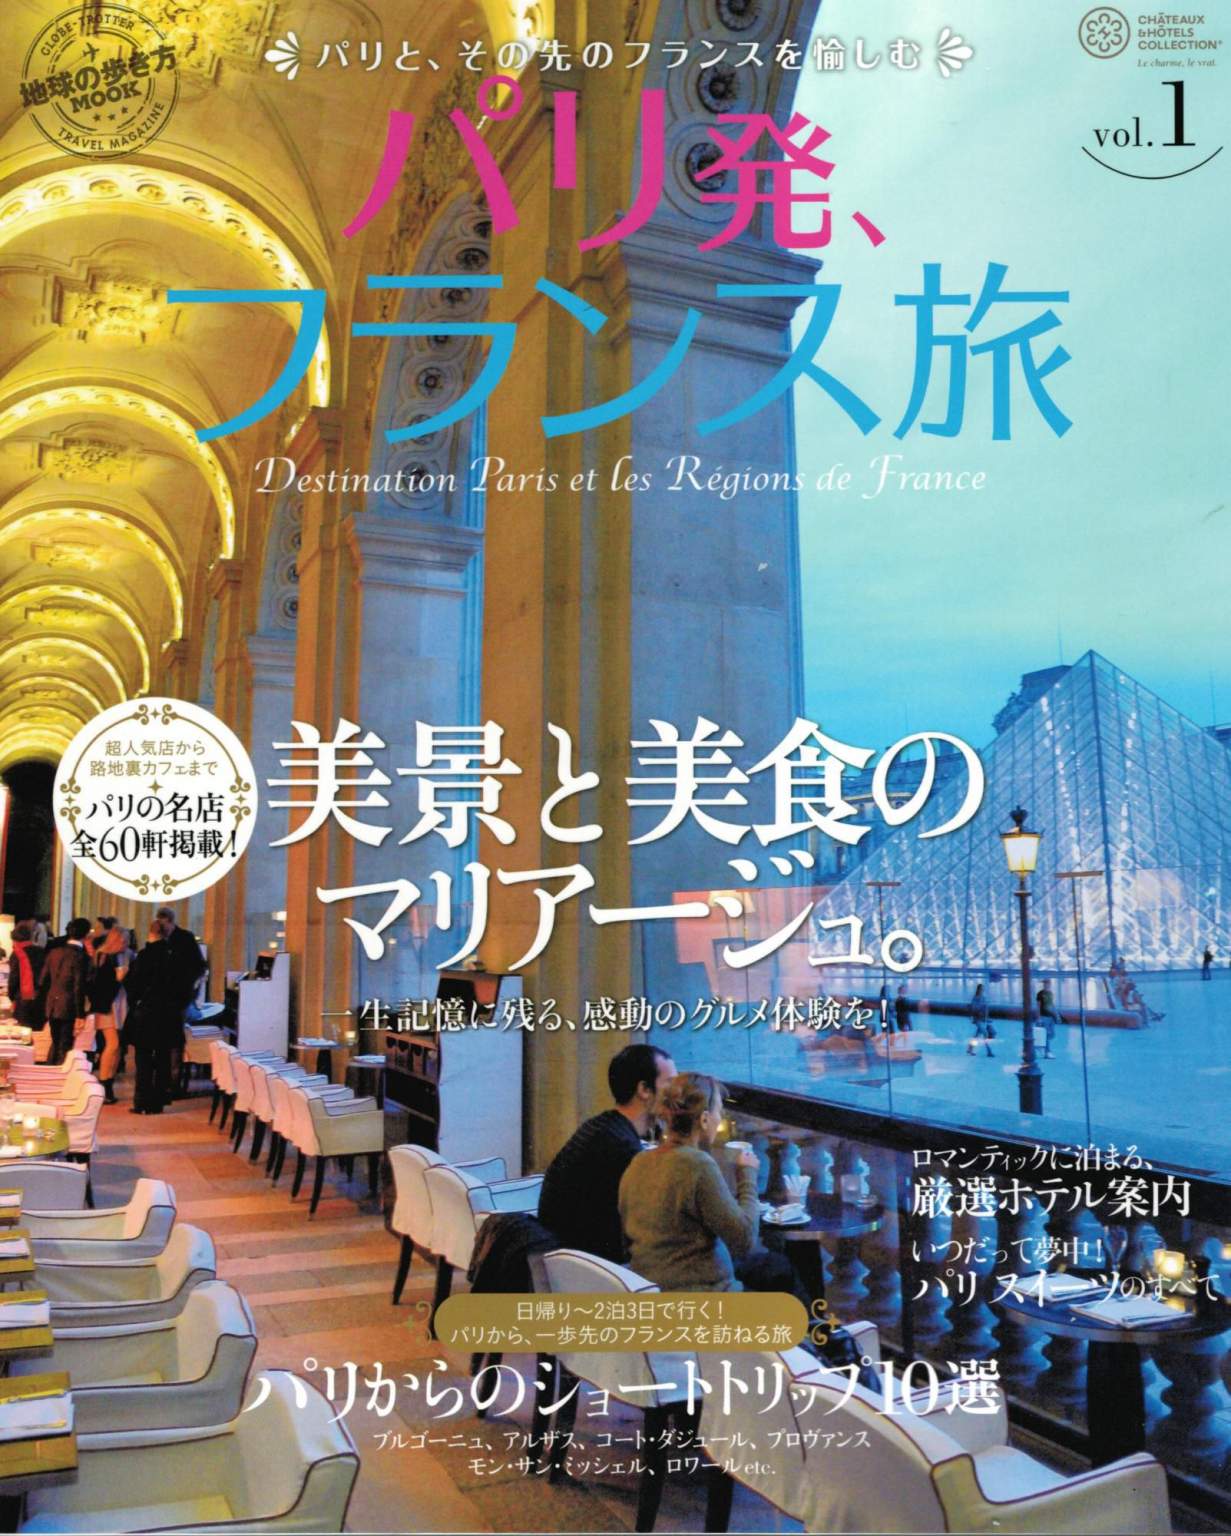 Châteaux Hôtels Collection au Japon - Décembre 2013<br />
 